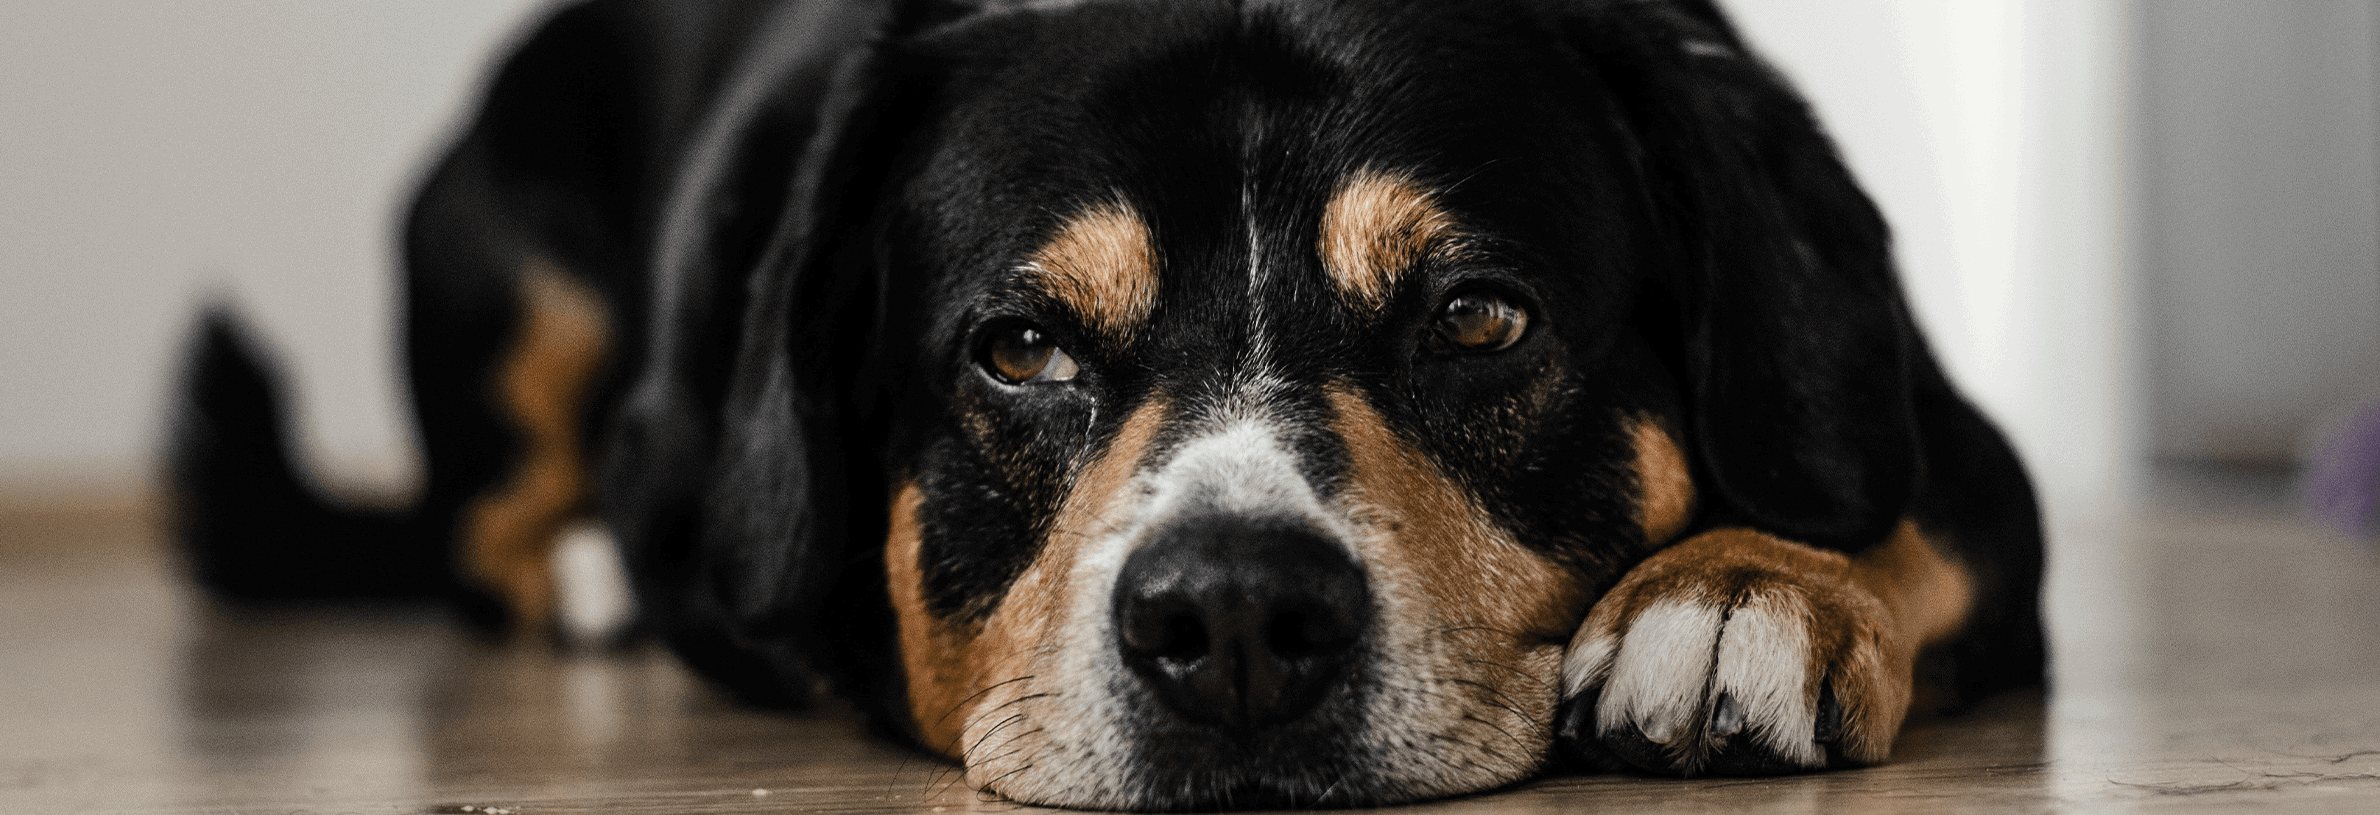 Epilepsie bij honden, wat moet ik weten?